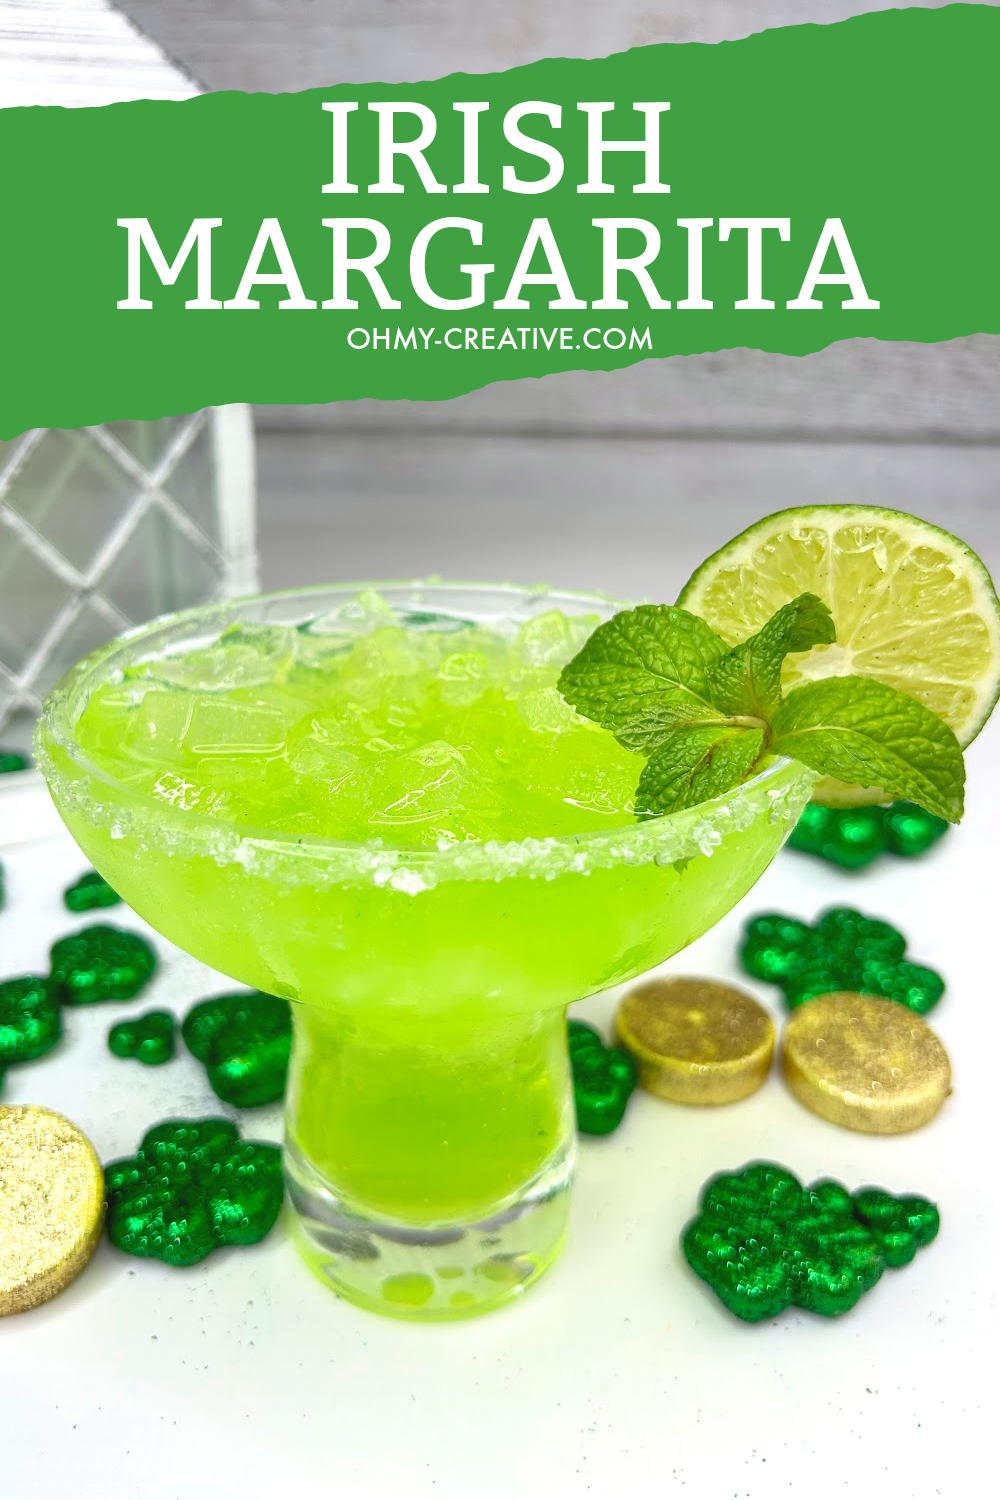 Irish Margarita With Jameson